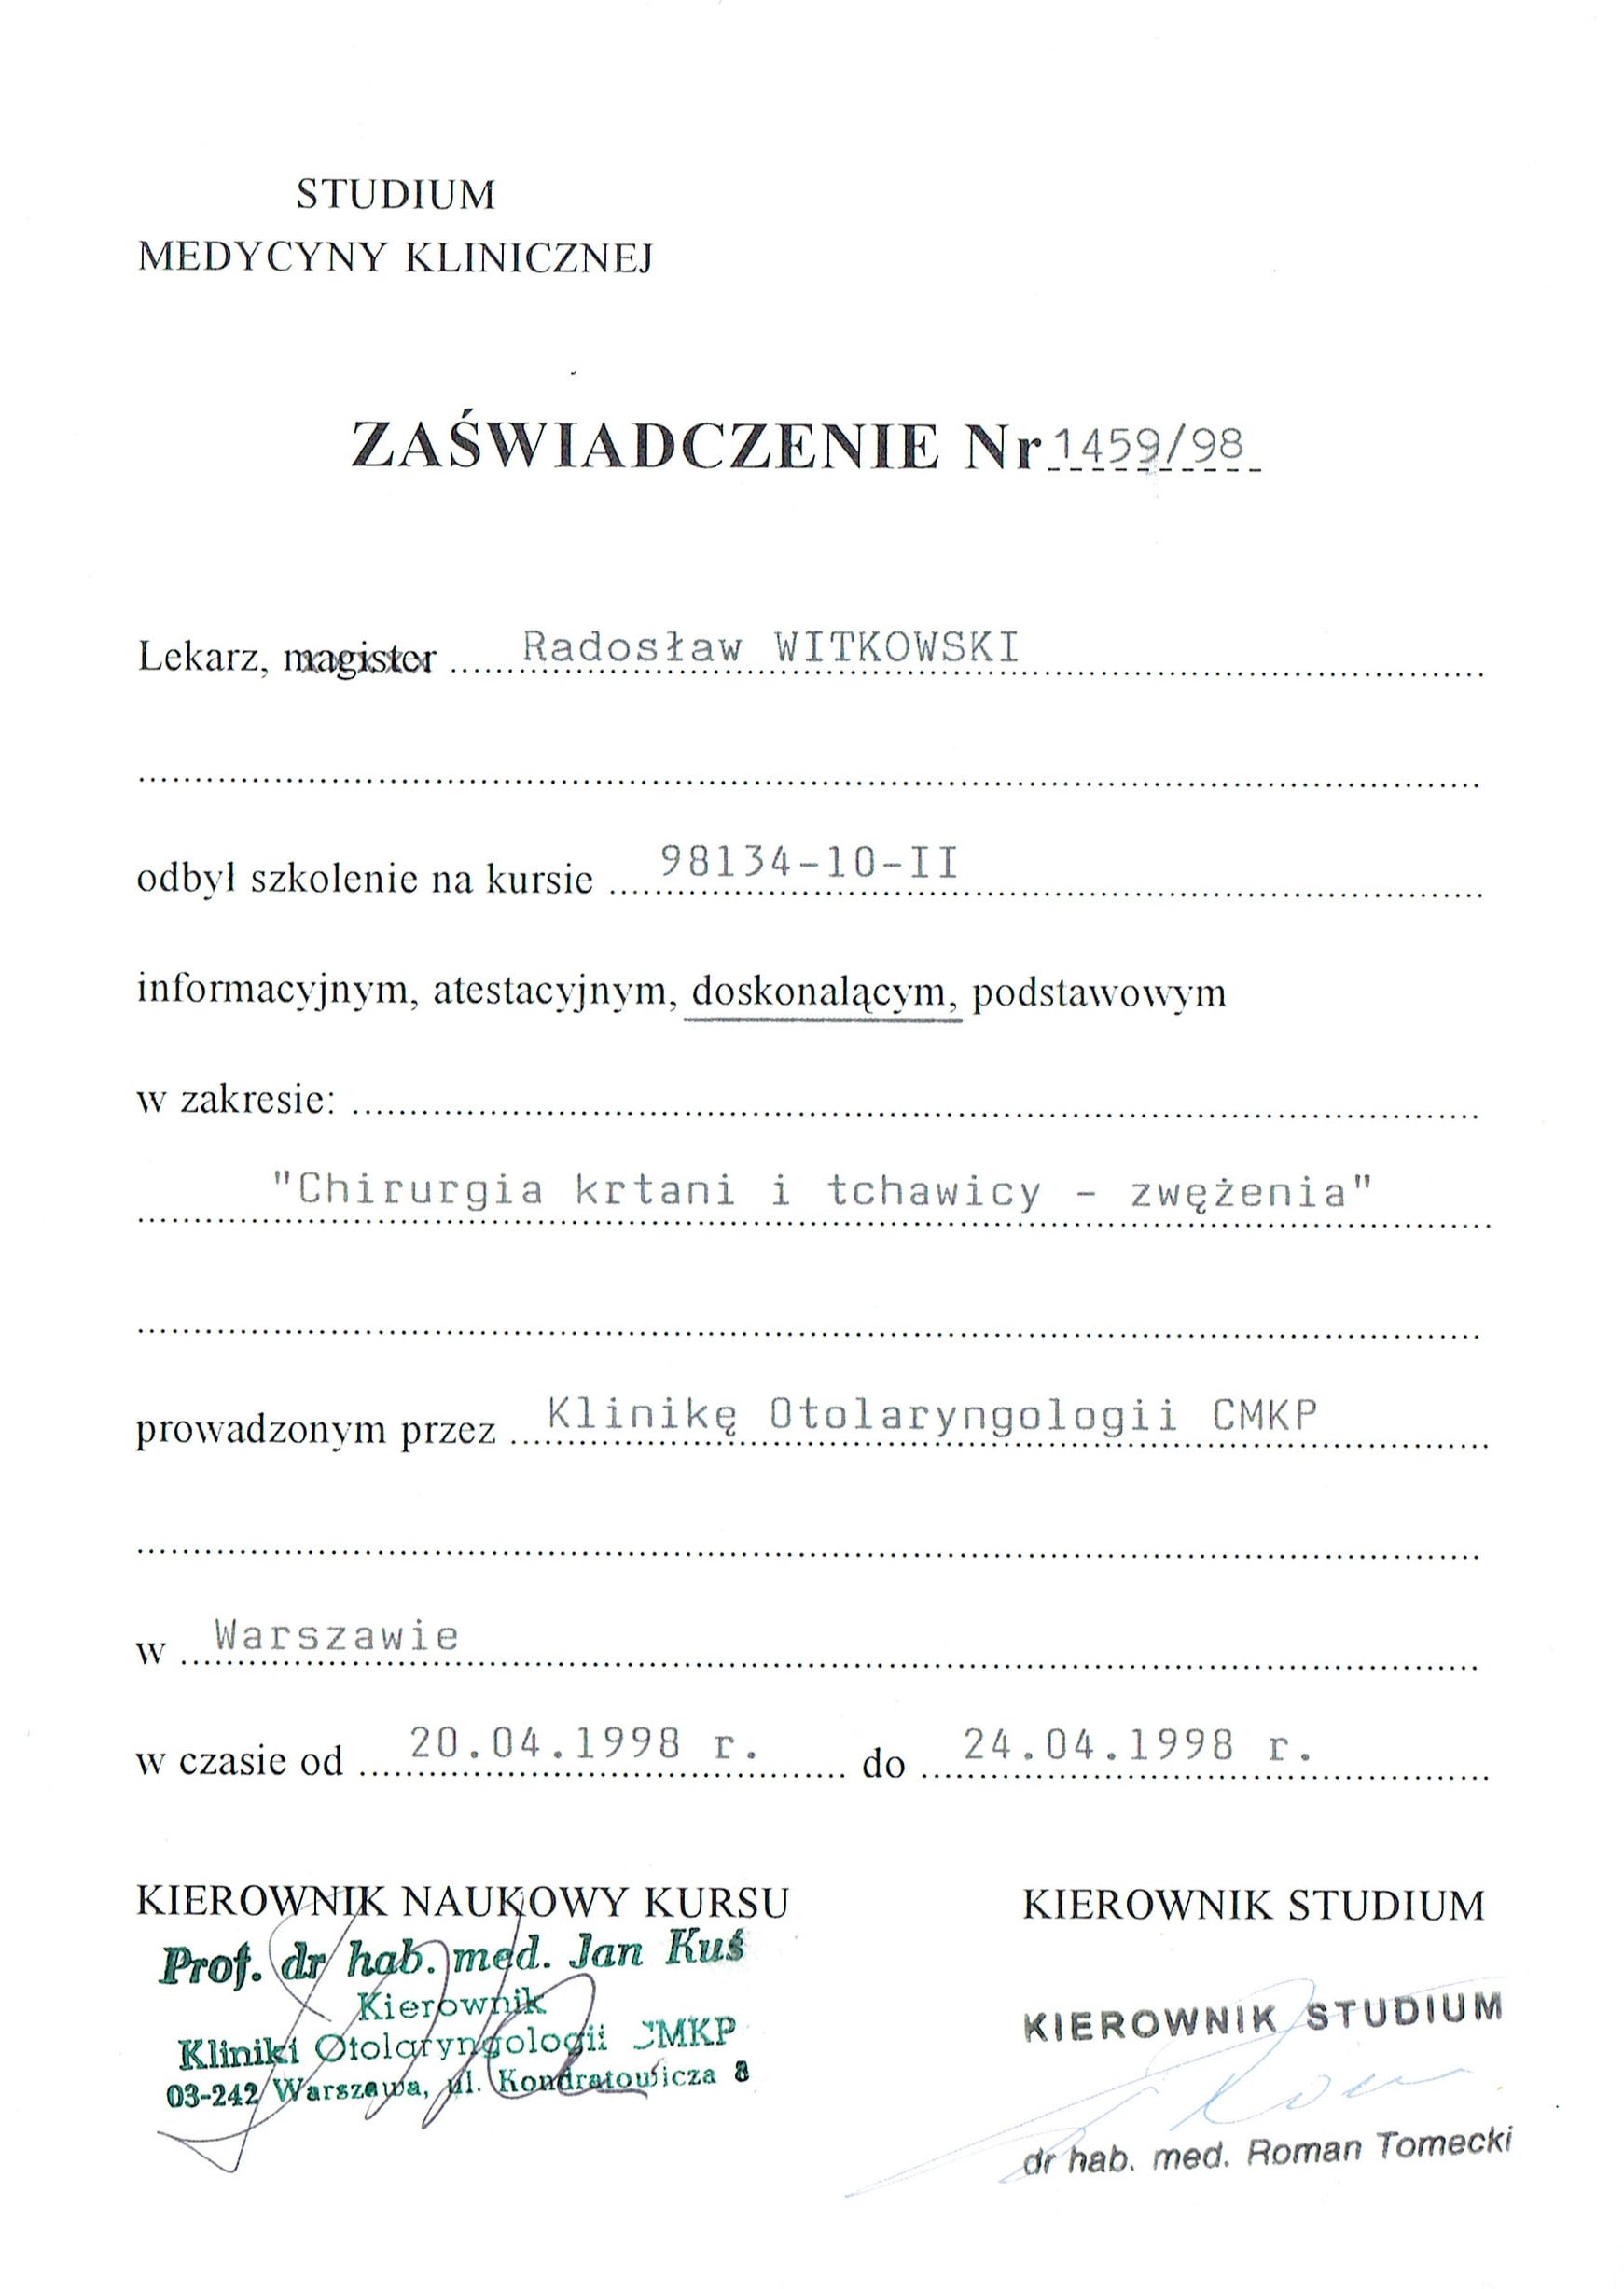 Radosław Witkowski certyfikat 17